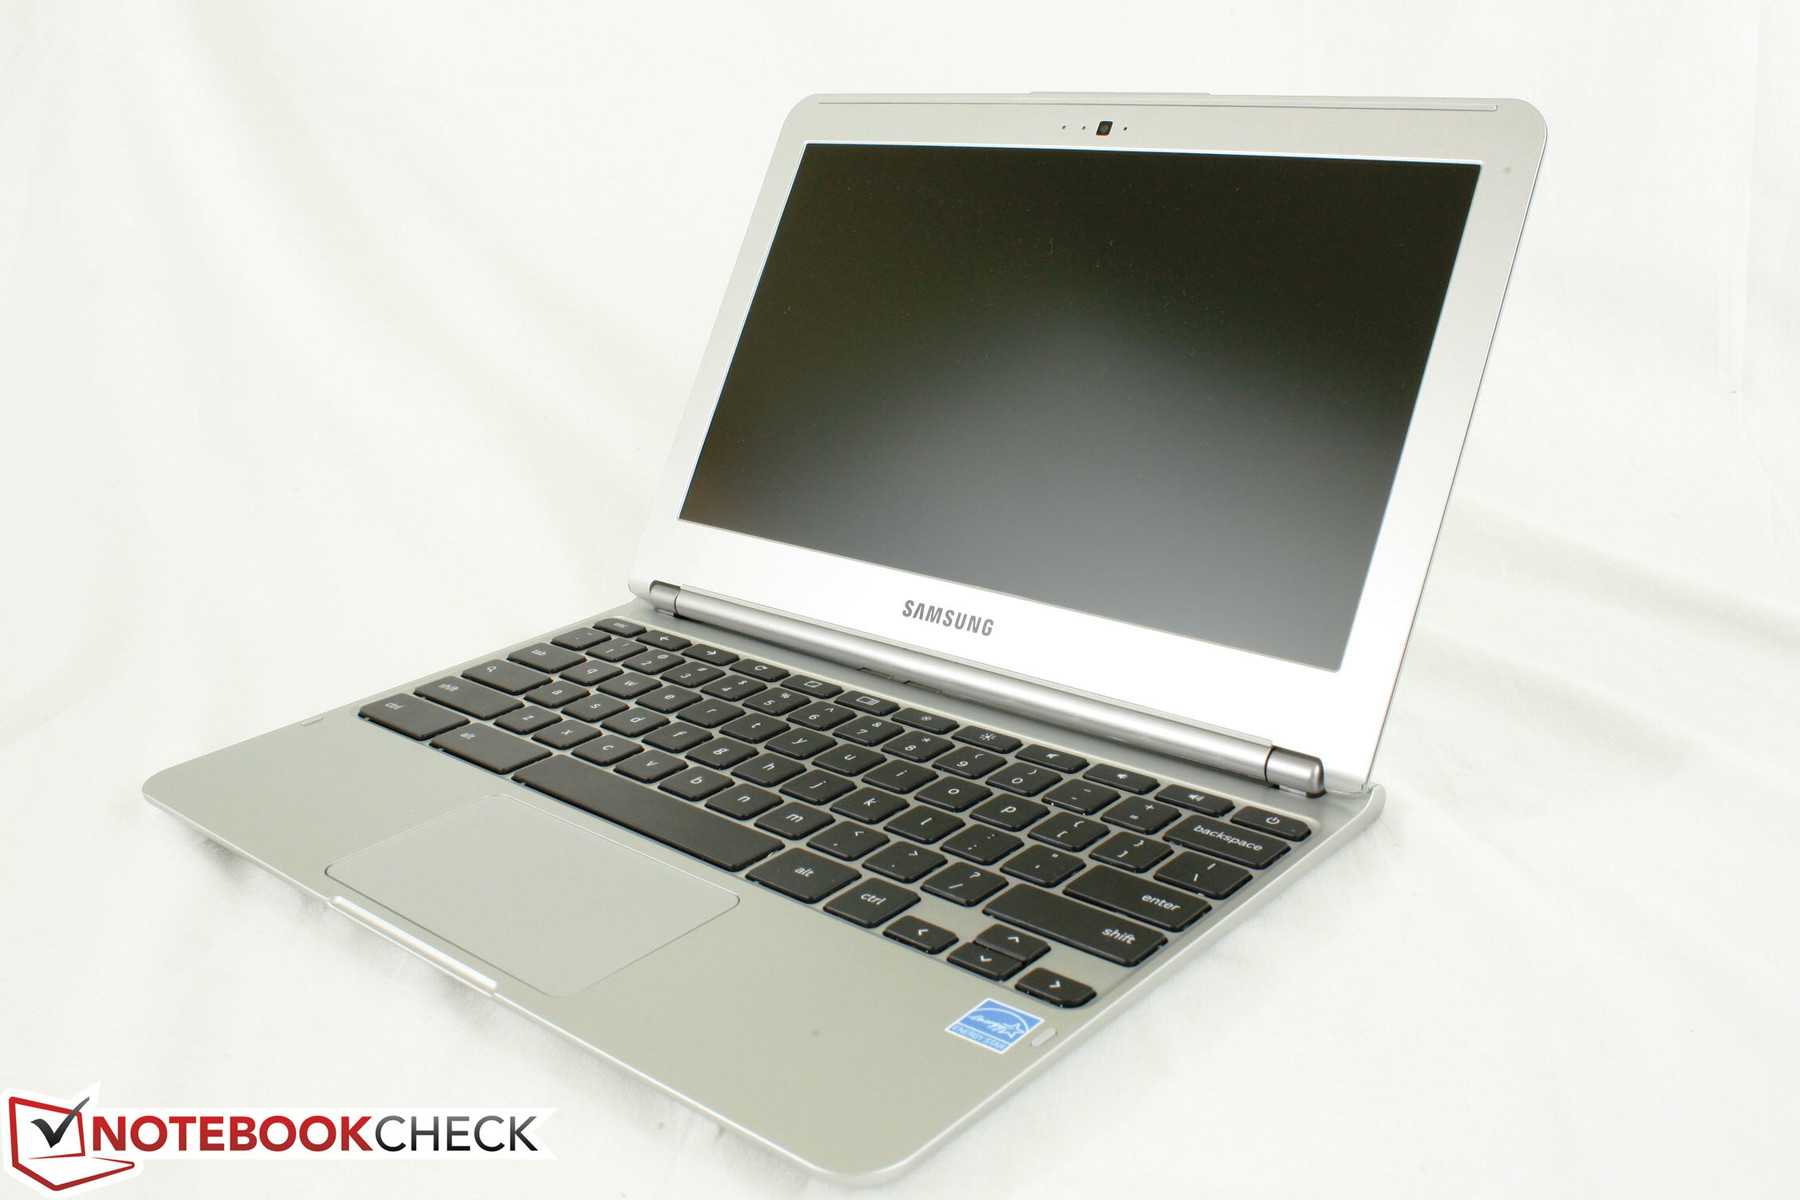 Ноутбук samsung chromebook xe303c12-a01 — купить, цена и характеристики, отзывы